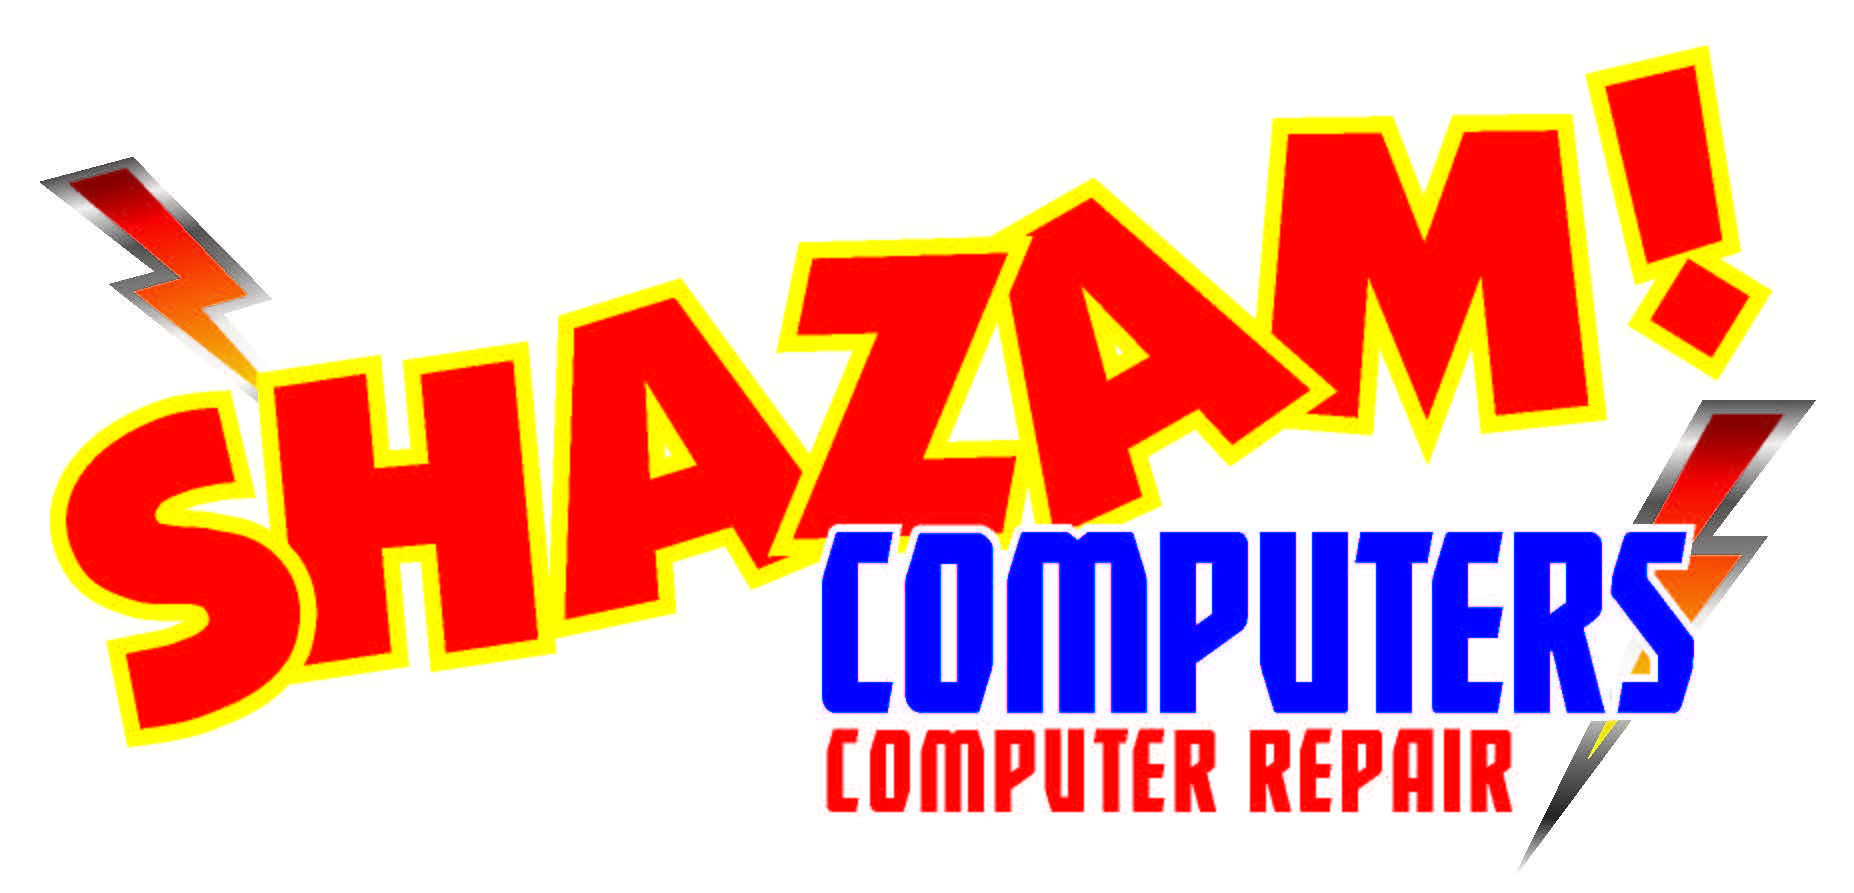 shazam-new-logo